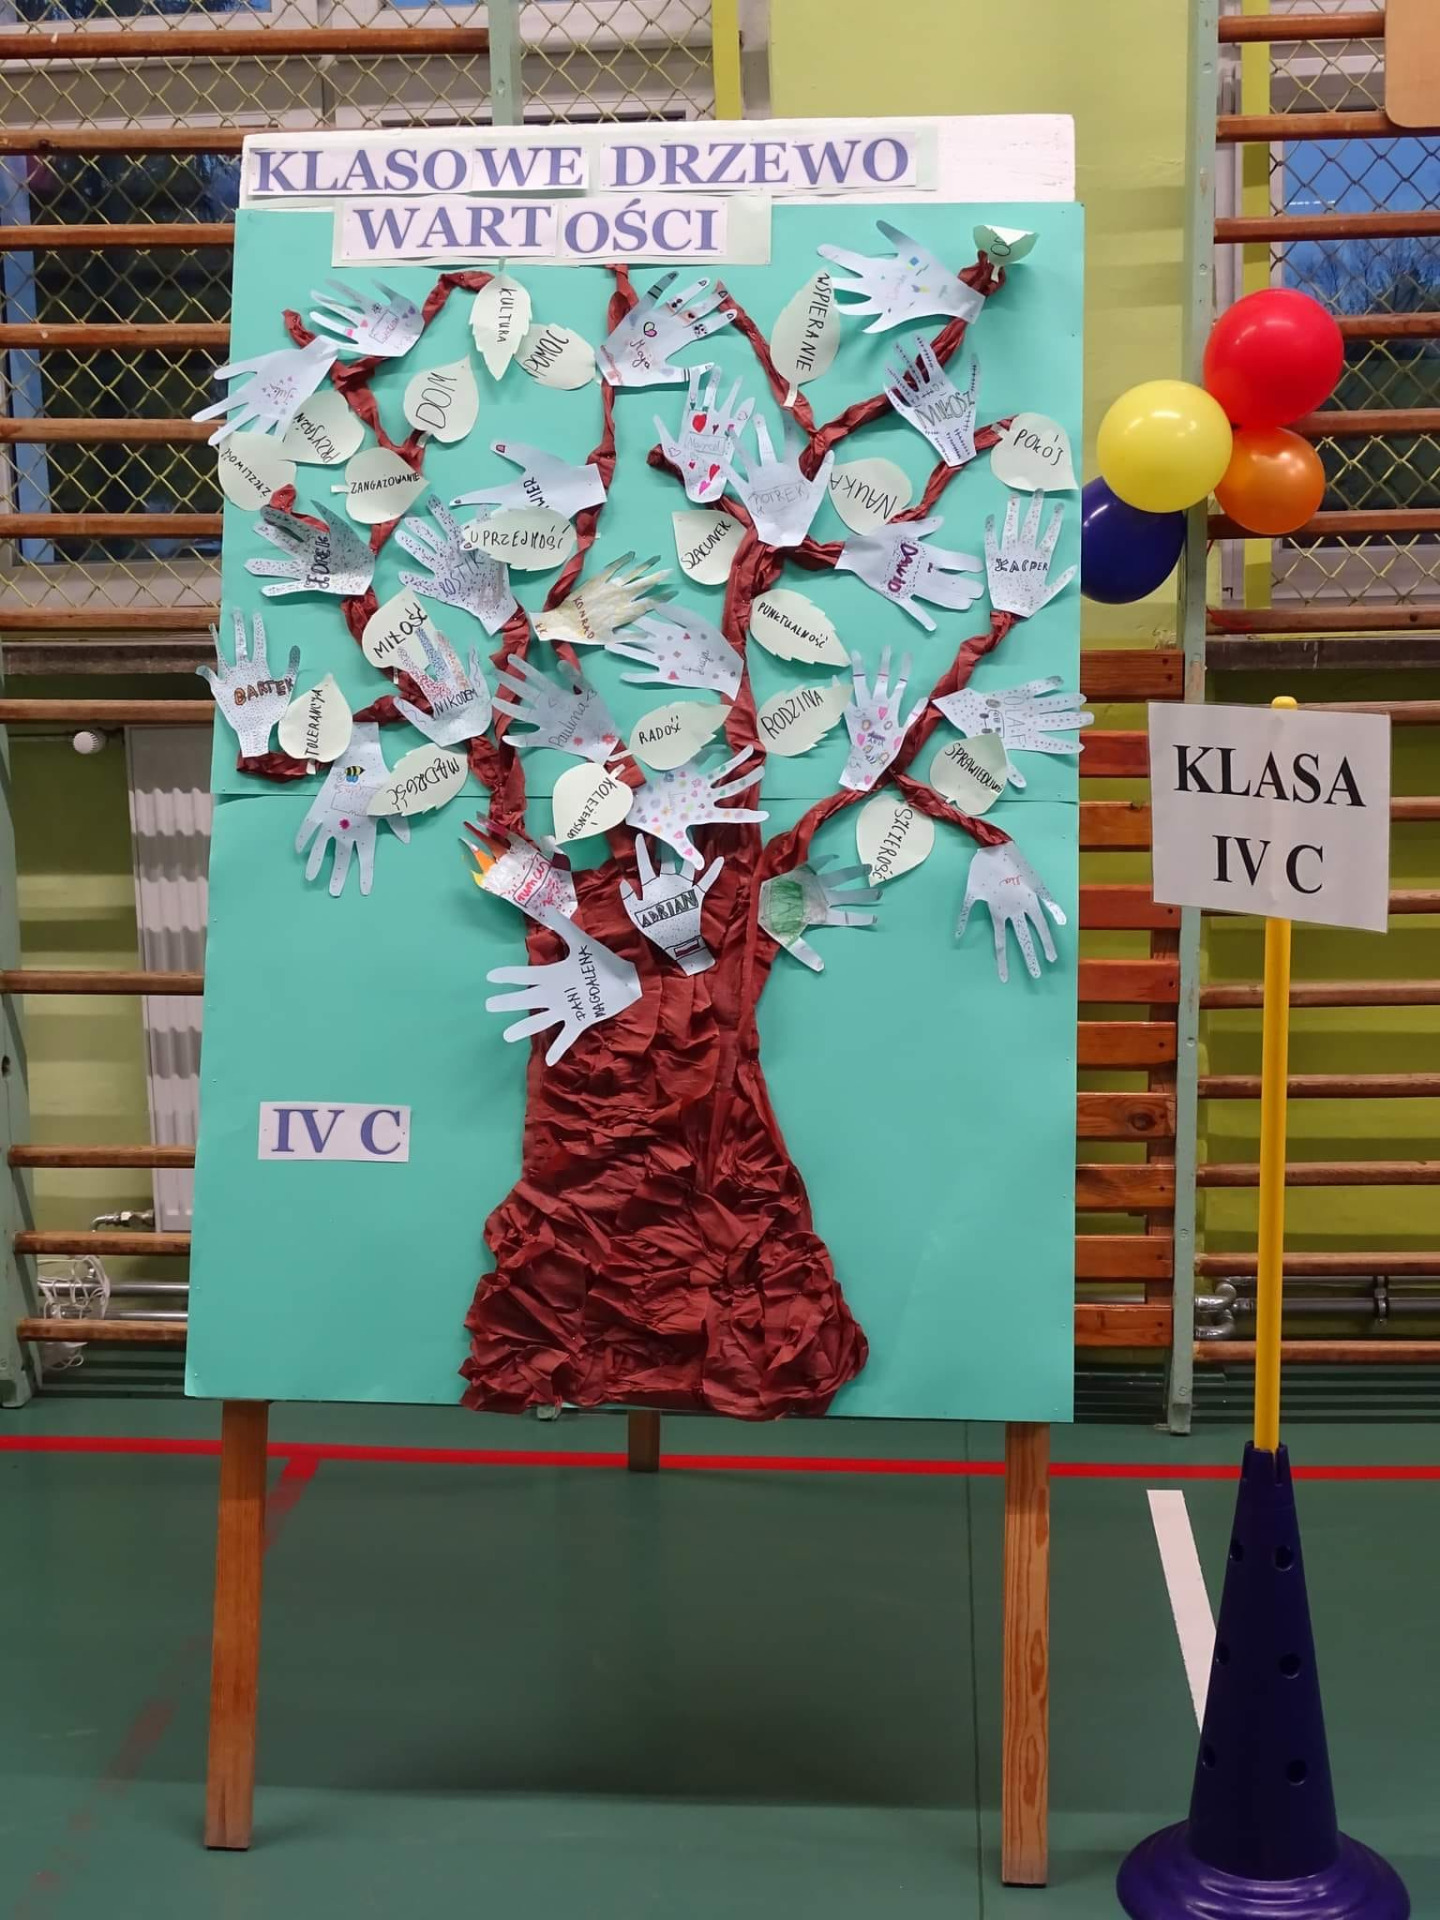 Drzewo wartości klasy 4c